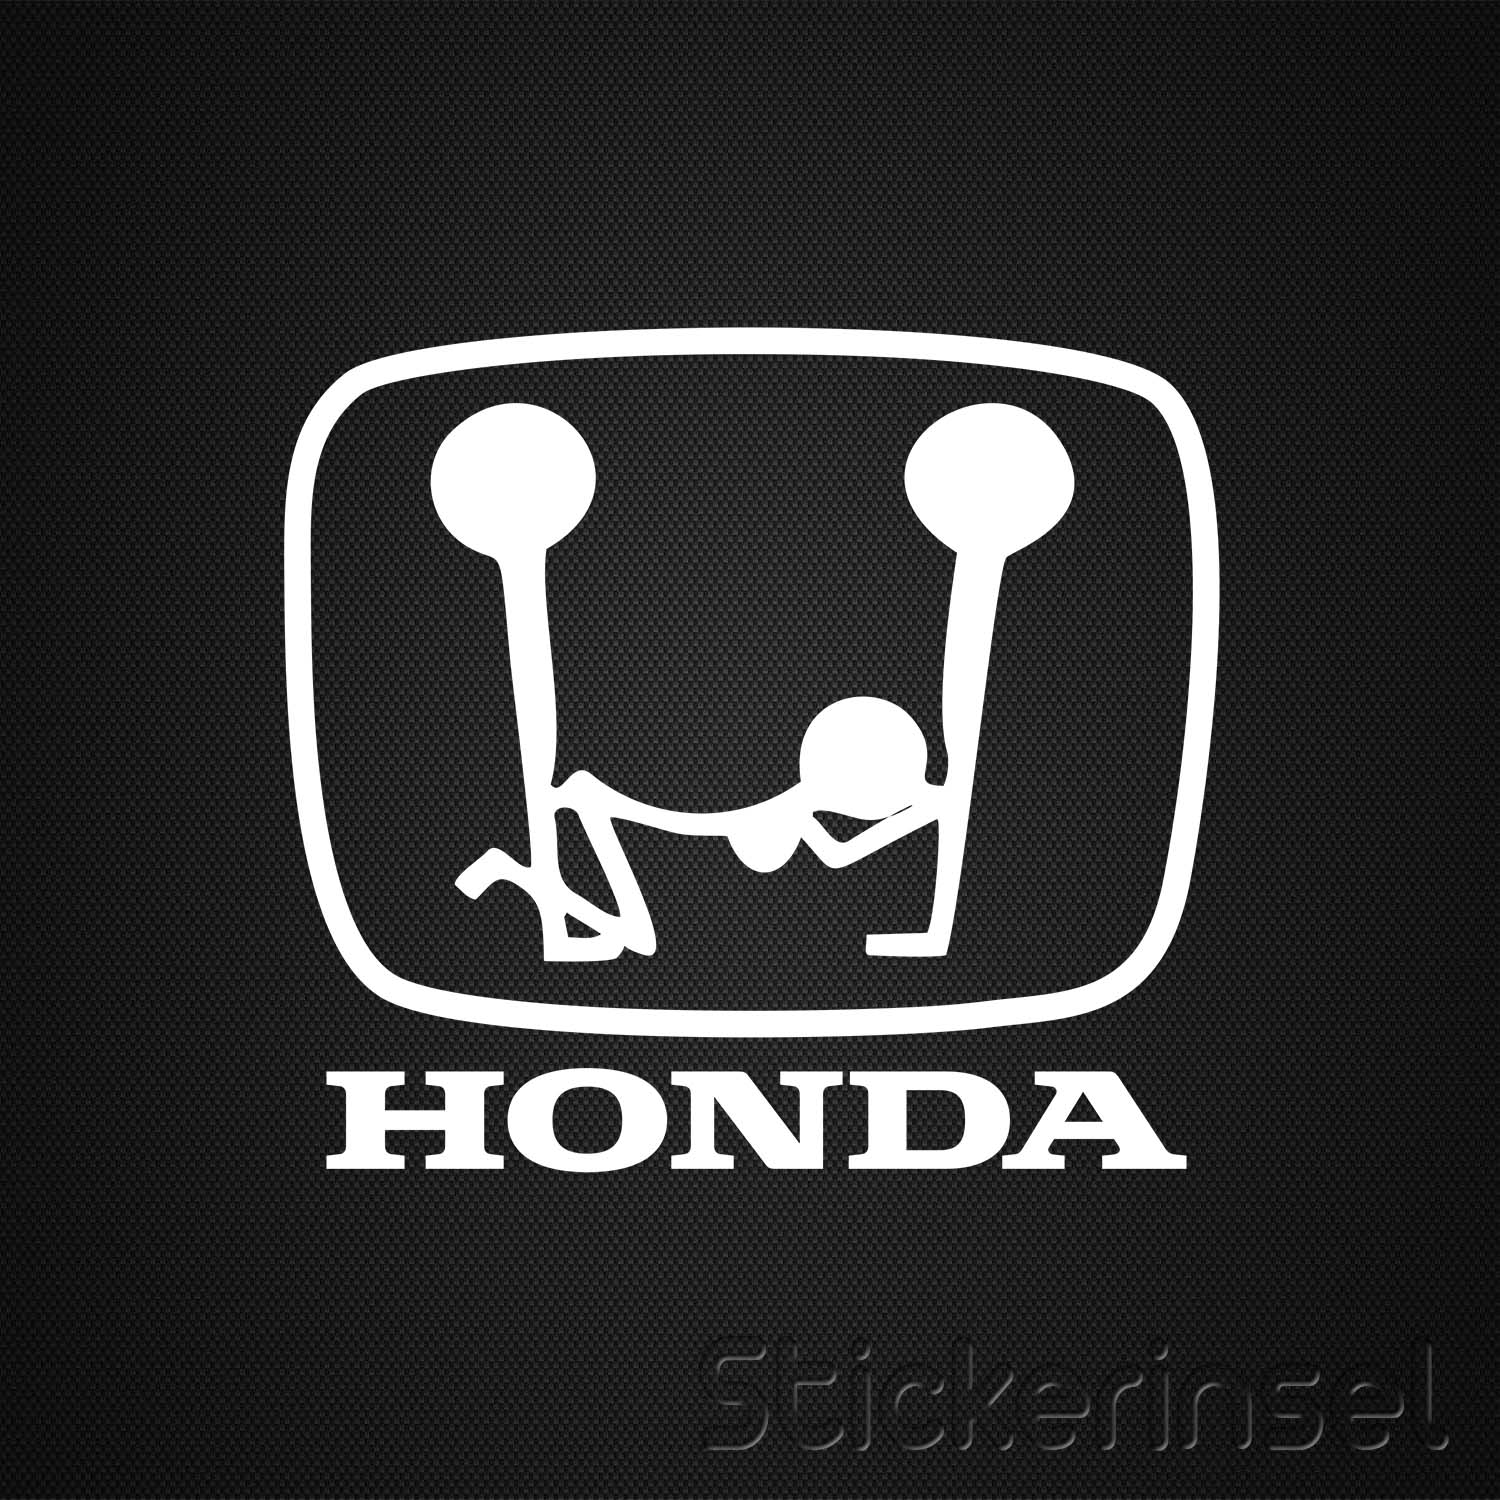 Honda Dreier » Stickerinsel - Autoaufkleber und Fahrzeugbeschriftung